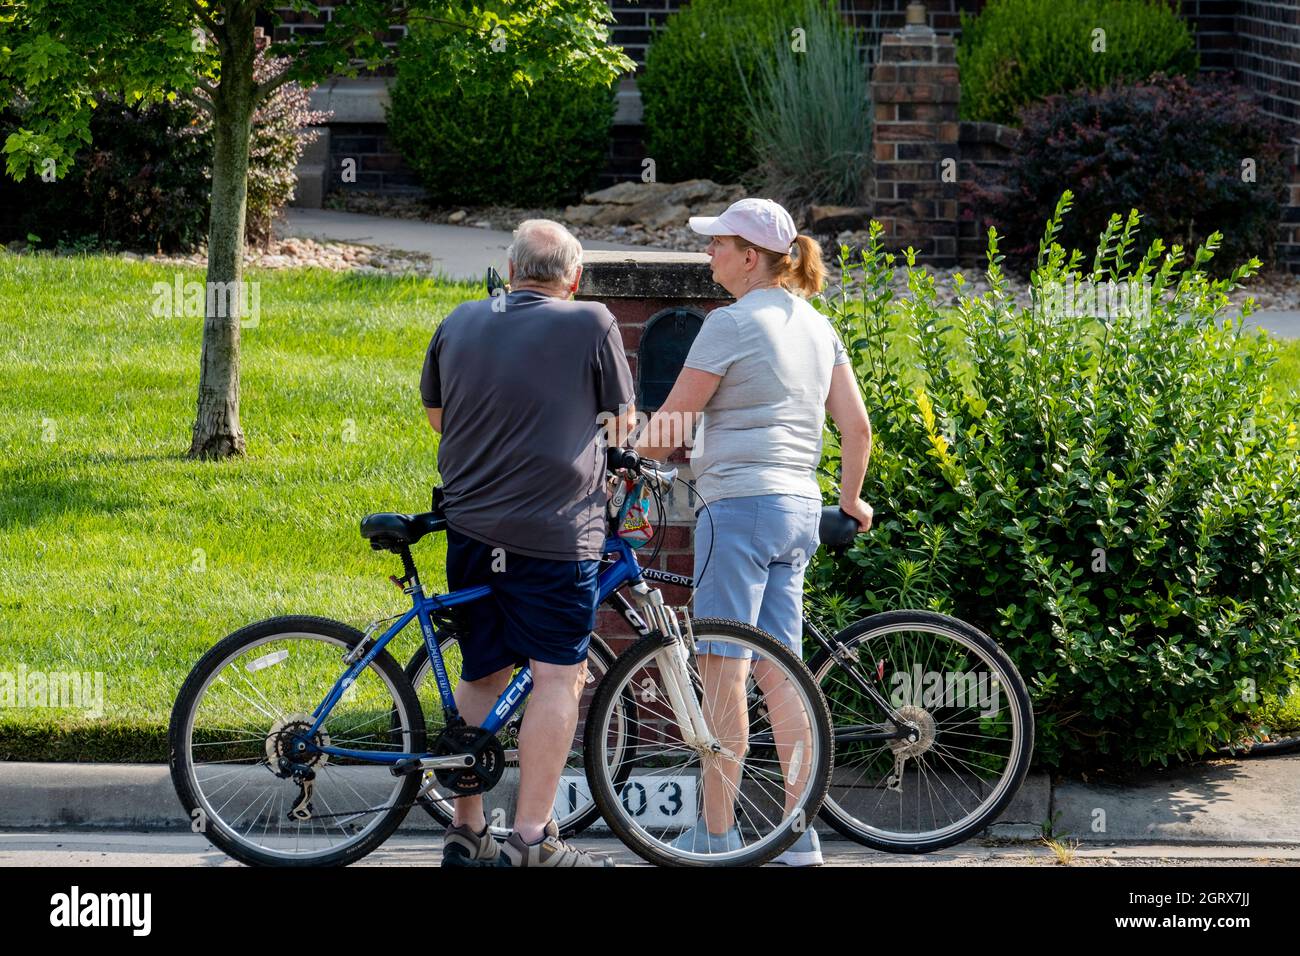 Un uomo caucasico anziano ferma la sua bicicletta nella strada di un quartiere residenziale per rispondere al suo cellulare mentre una donna compagno aspetta. USA. Foto Stock